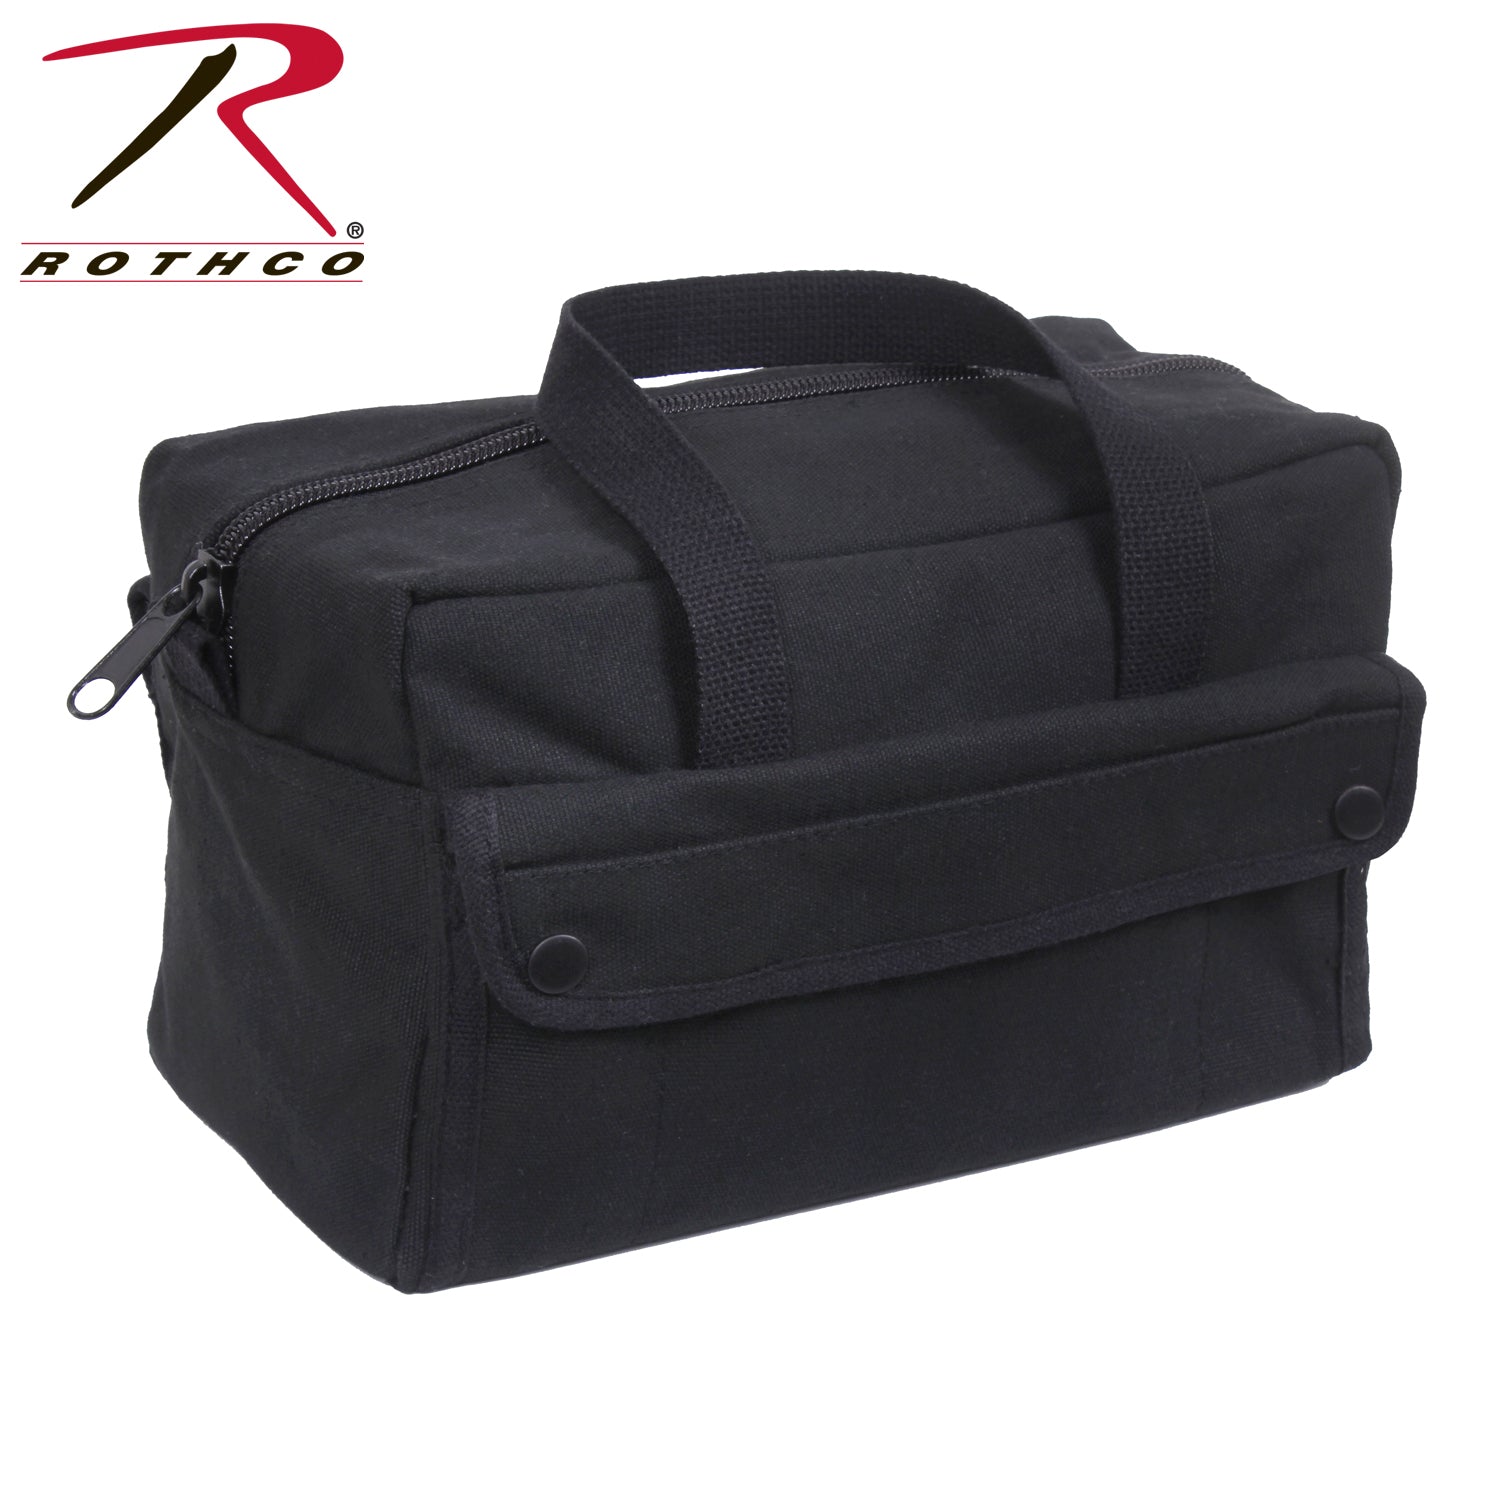 Rothco G.I. Type Mechanics Tool Bag